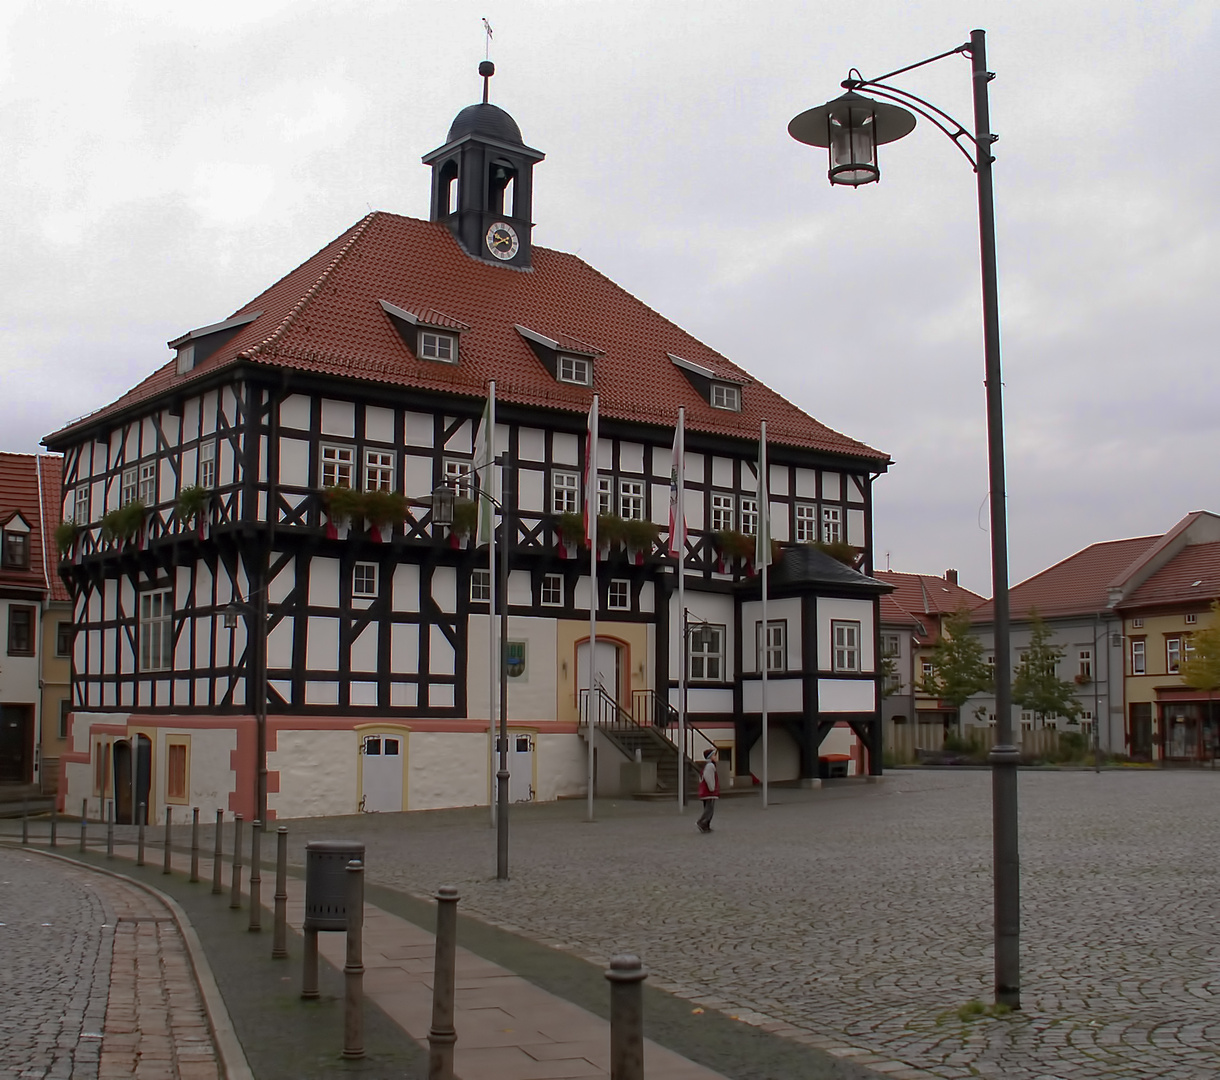 Rathaus von Waltershausen